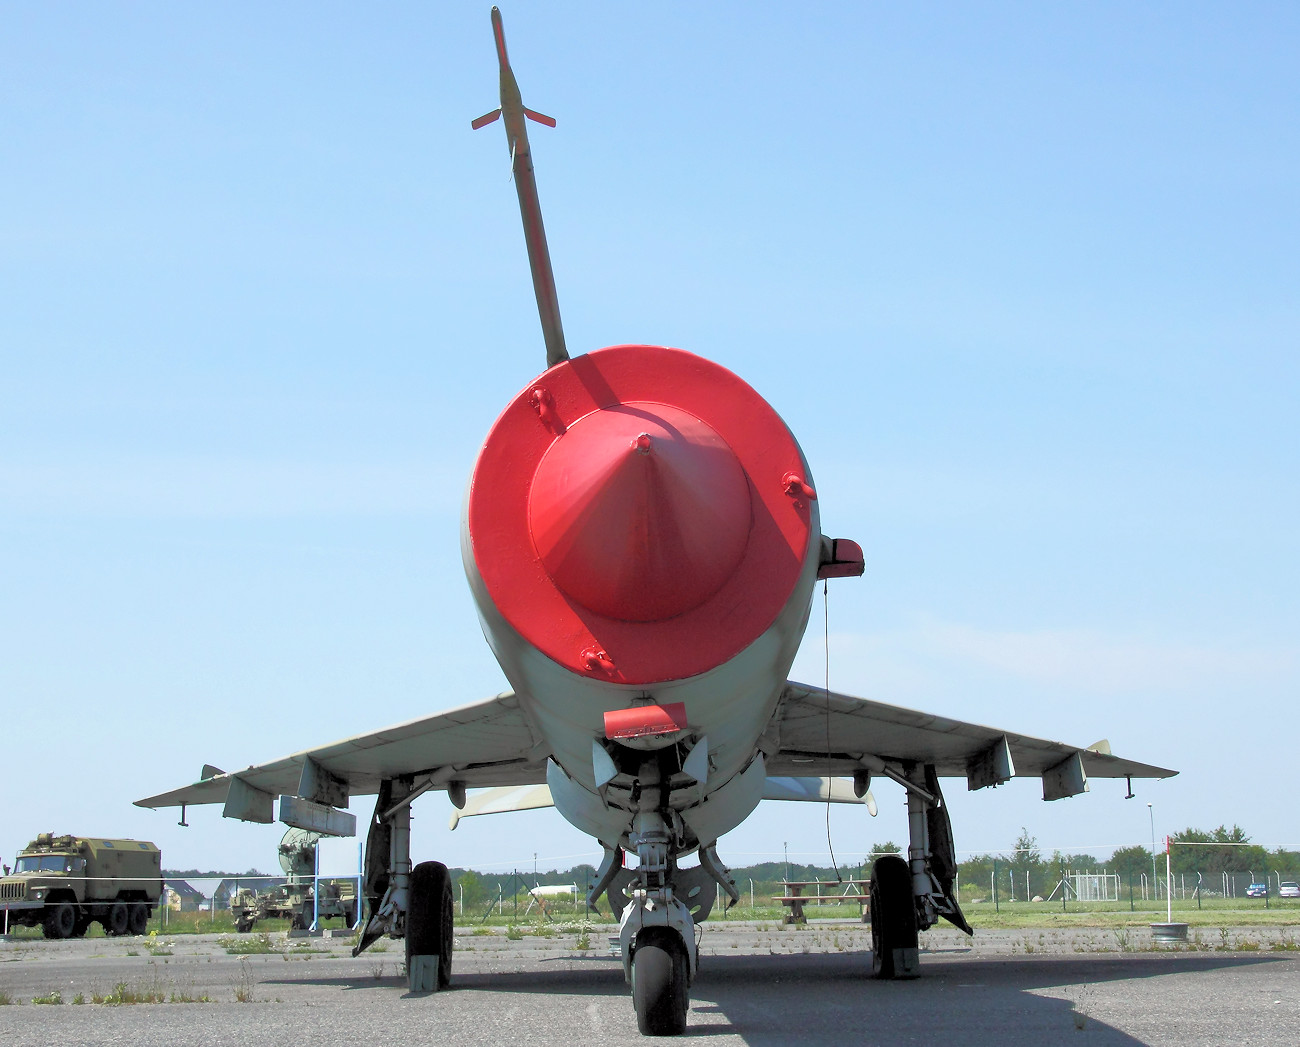 MiG-21 BIS - Mikojan-Gurewitsch